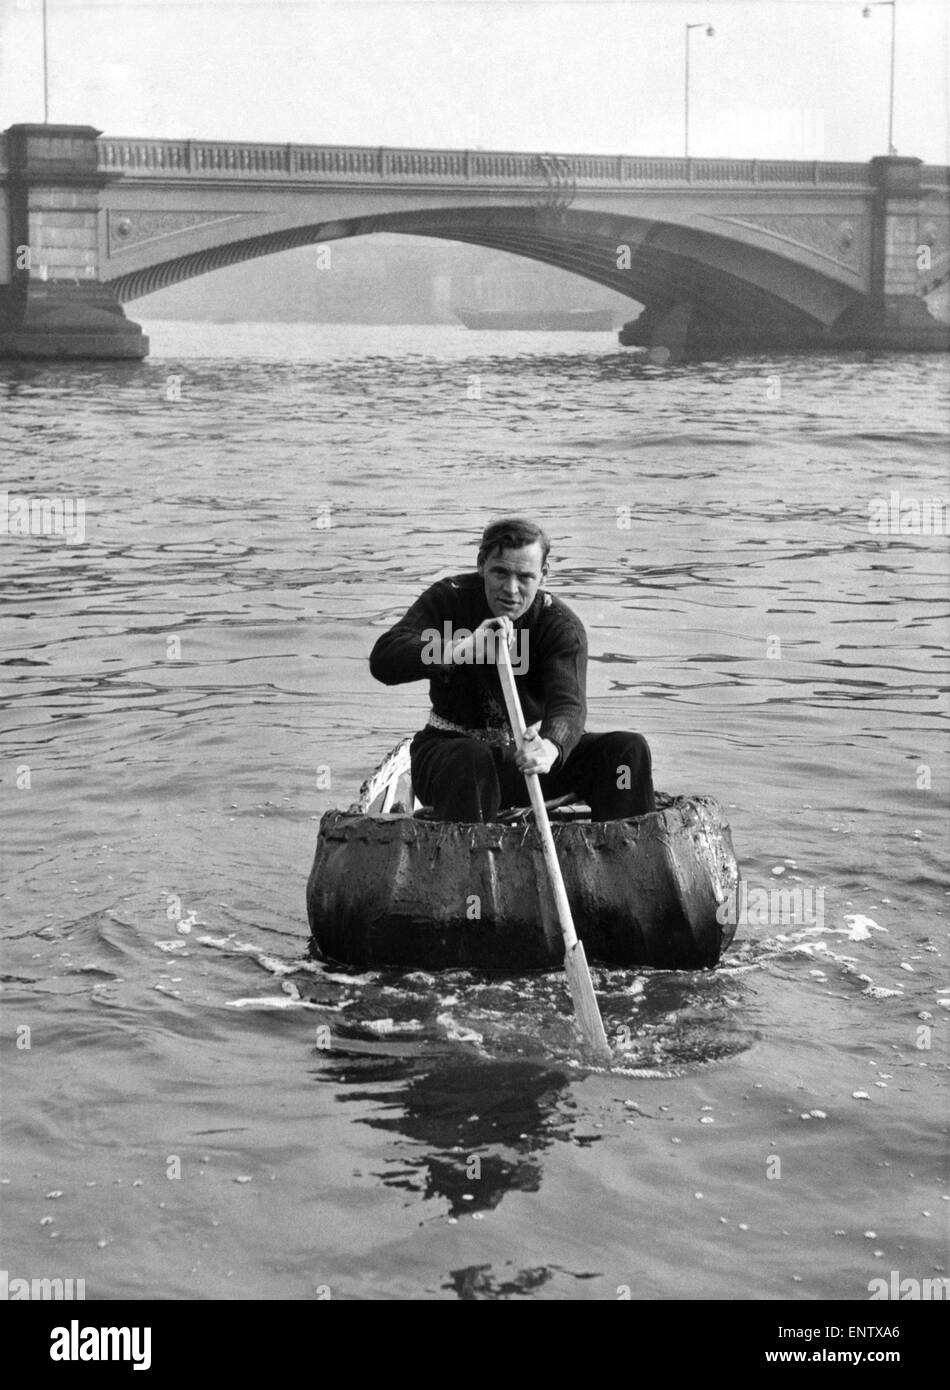 Hiermit können zurück zu den alten Briten sagt Viscount St. David, der seine Familie weiteren zurück als die meisten Menschen verfolgen können. Hier zu sehen mit einem Coracle die Art des Bootes, die alten Briten verwendet - auf der Themse bei Chelsea. 17. November 1952 P019117 Stockfoto